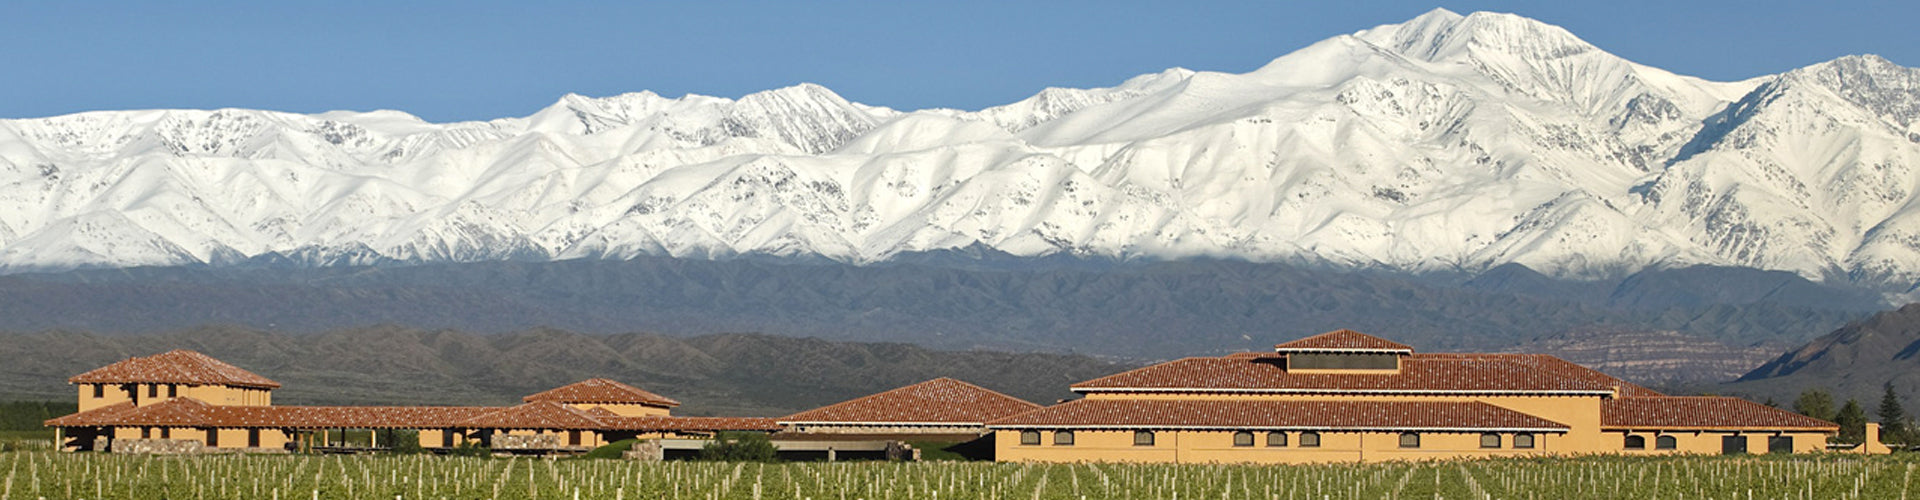 Finca Decero Winery in Mendoza